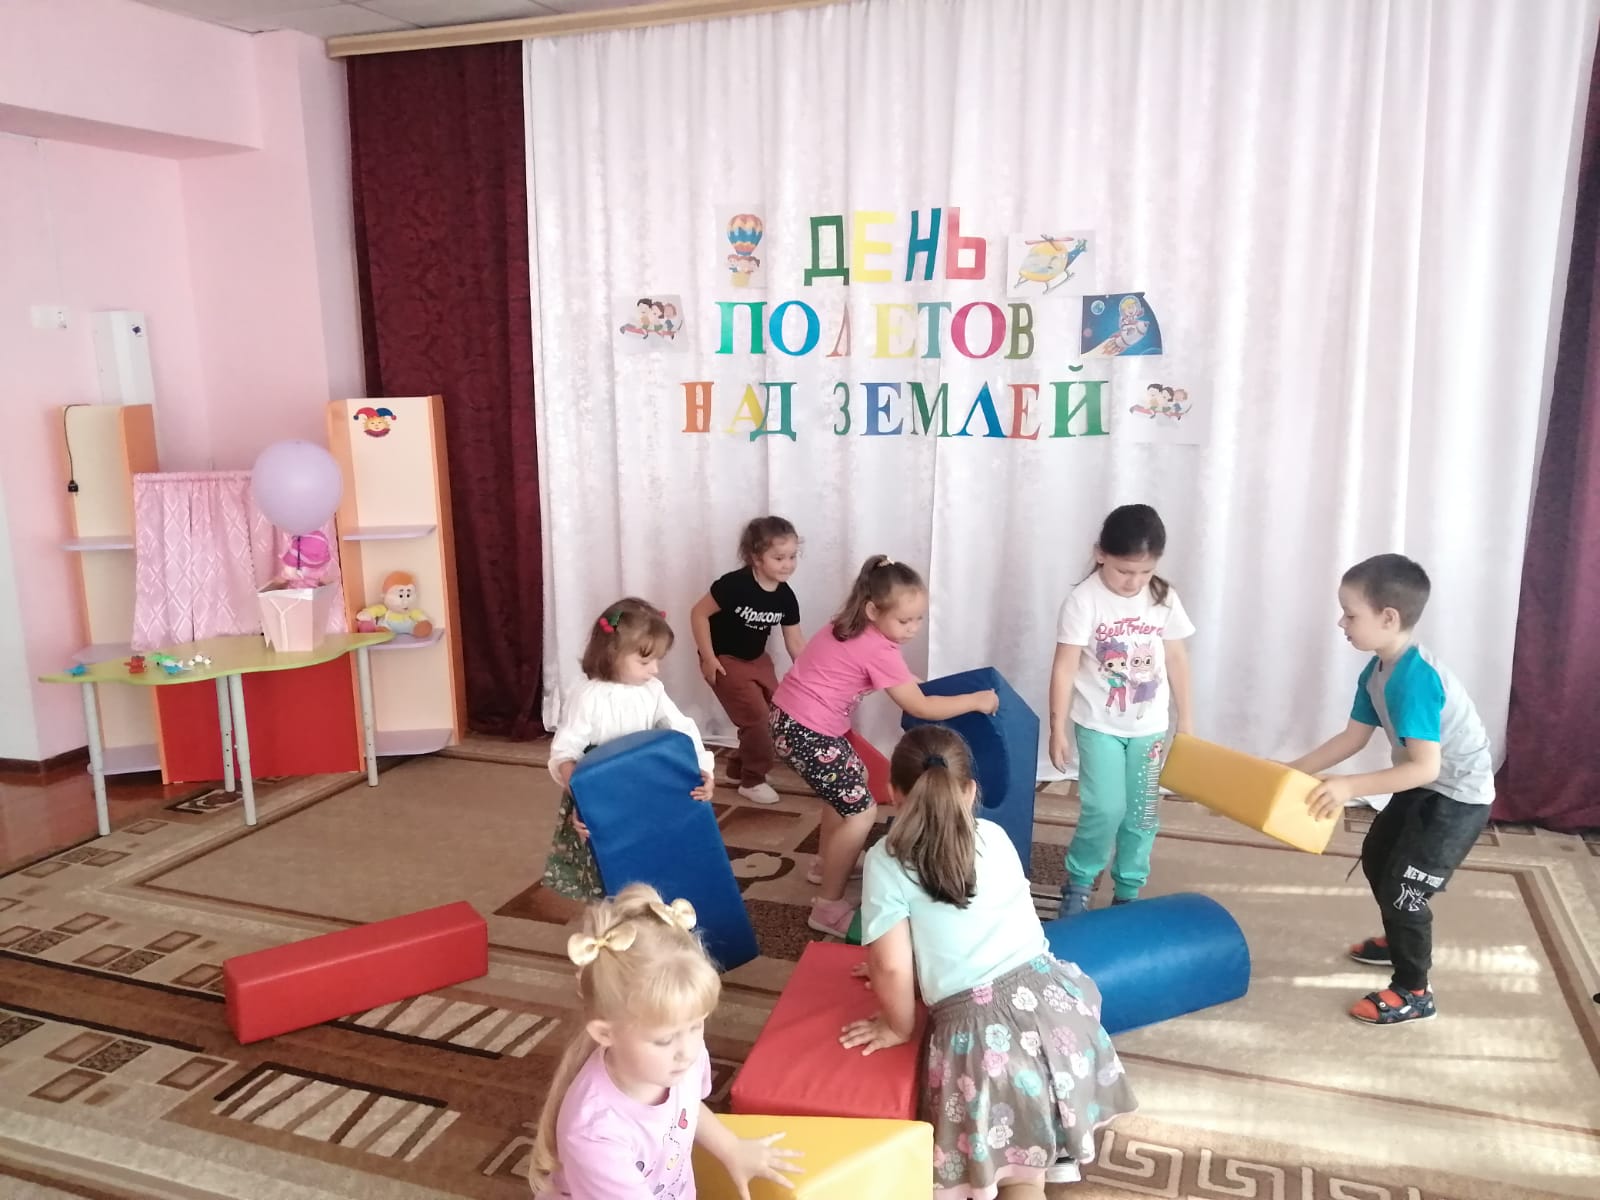 В детских садах Алексеевского городского округа прошло тематическое мероприятие, посвященное полетам над Землей.